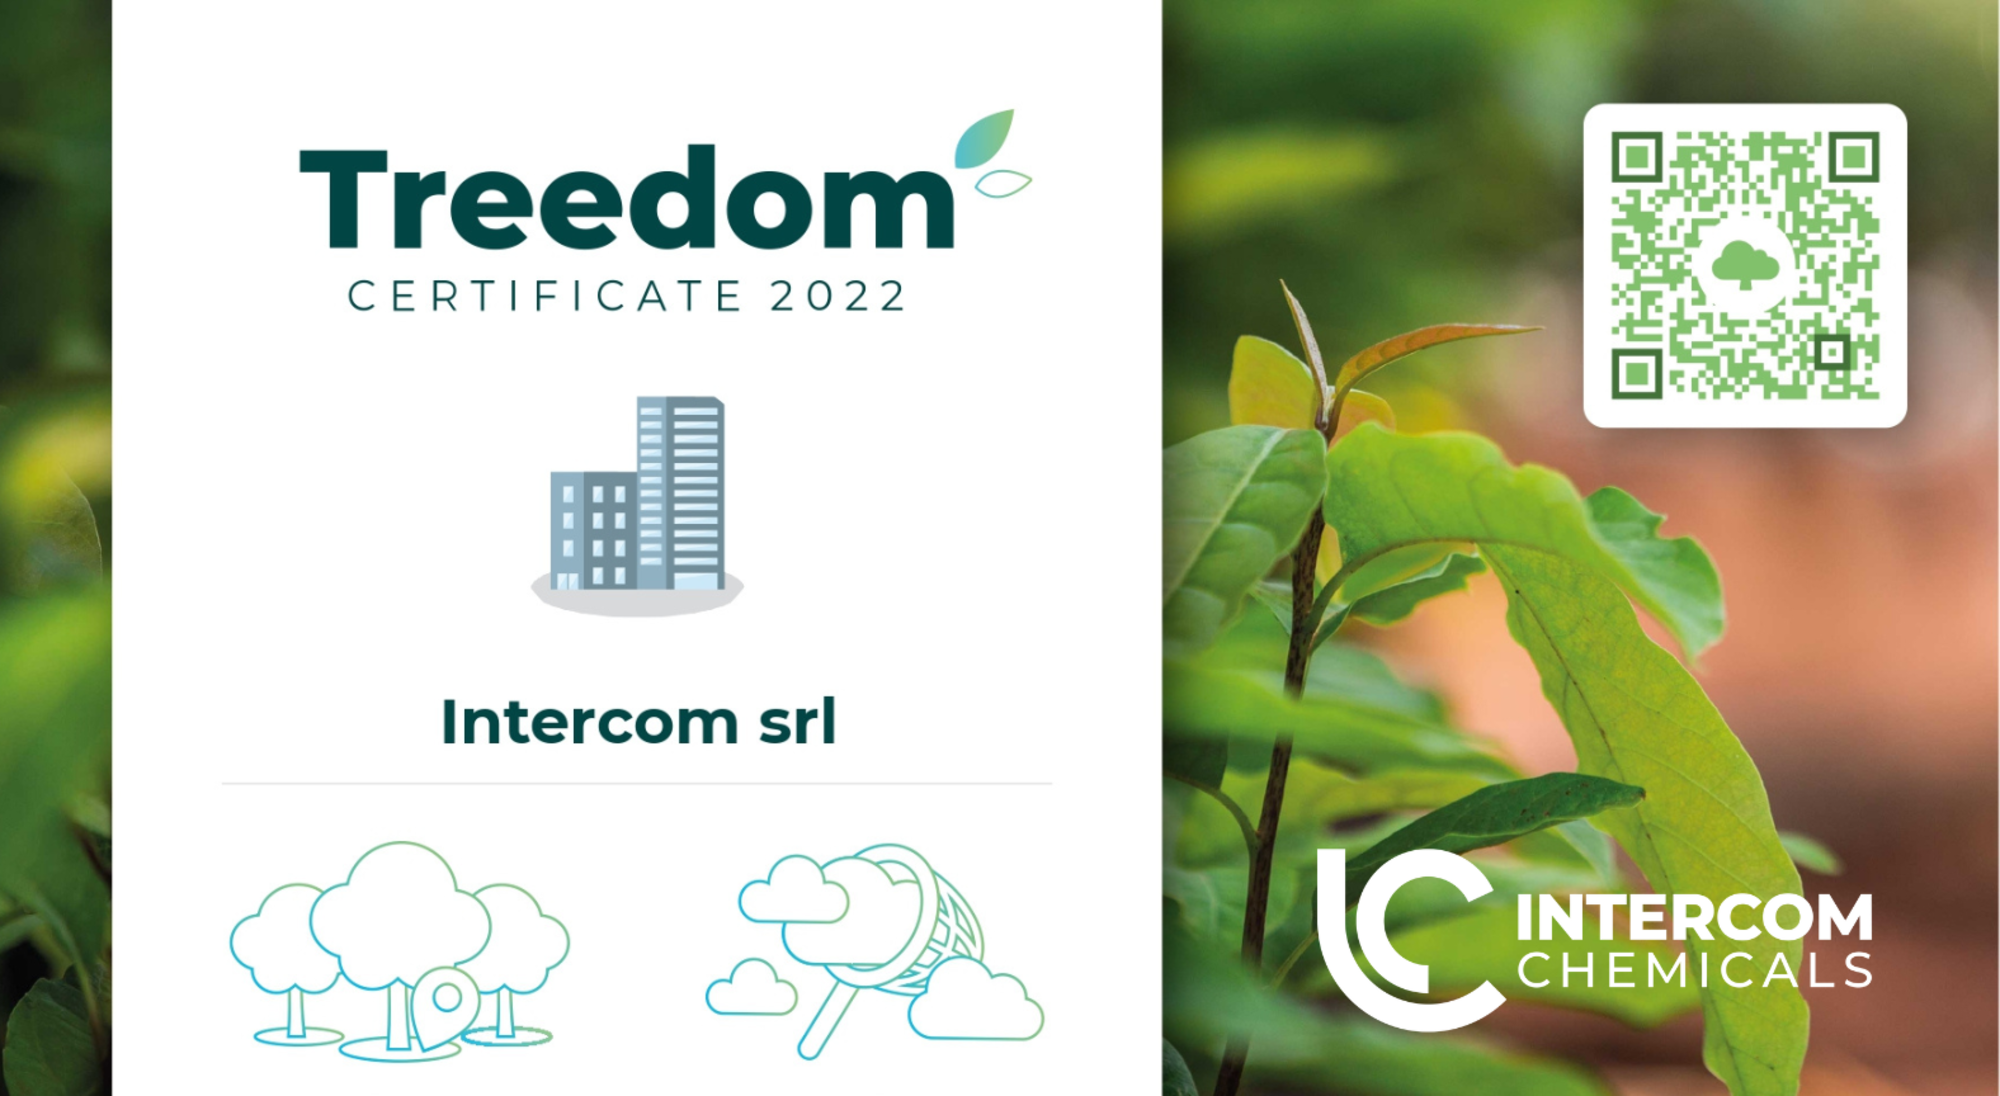 L'impegno per l'ambiente di Intercom chemicals: il sostegno a Treedom